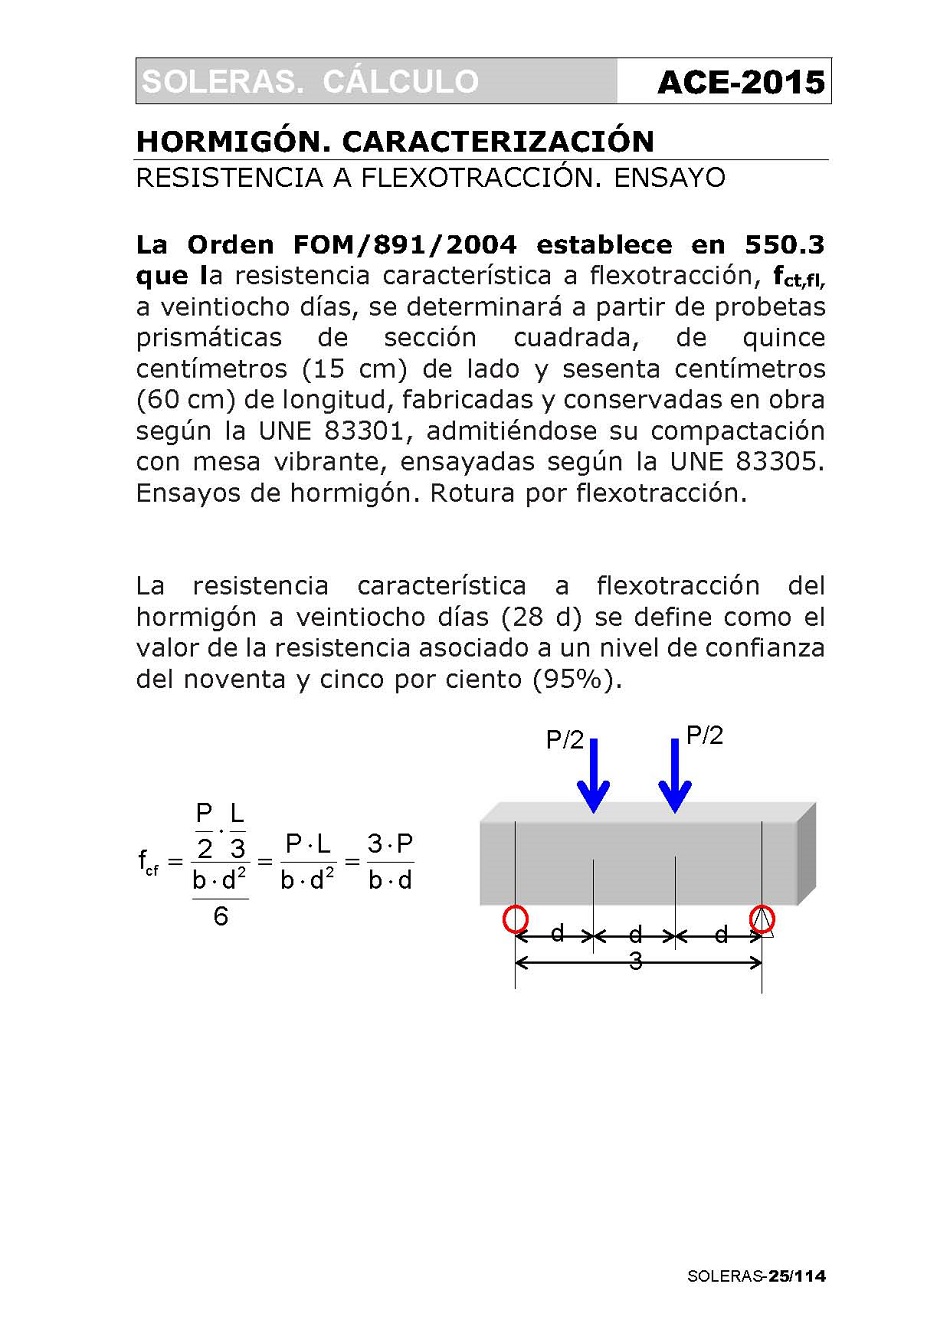 Cálculo de Soleras de Hormigón. Página 25